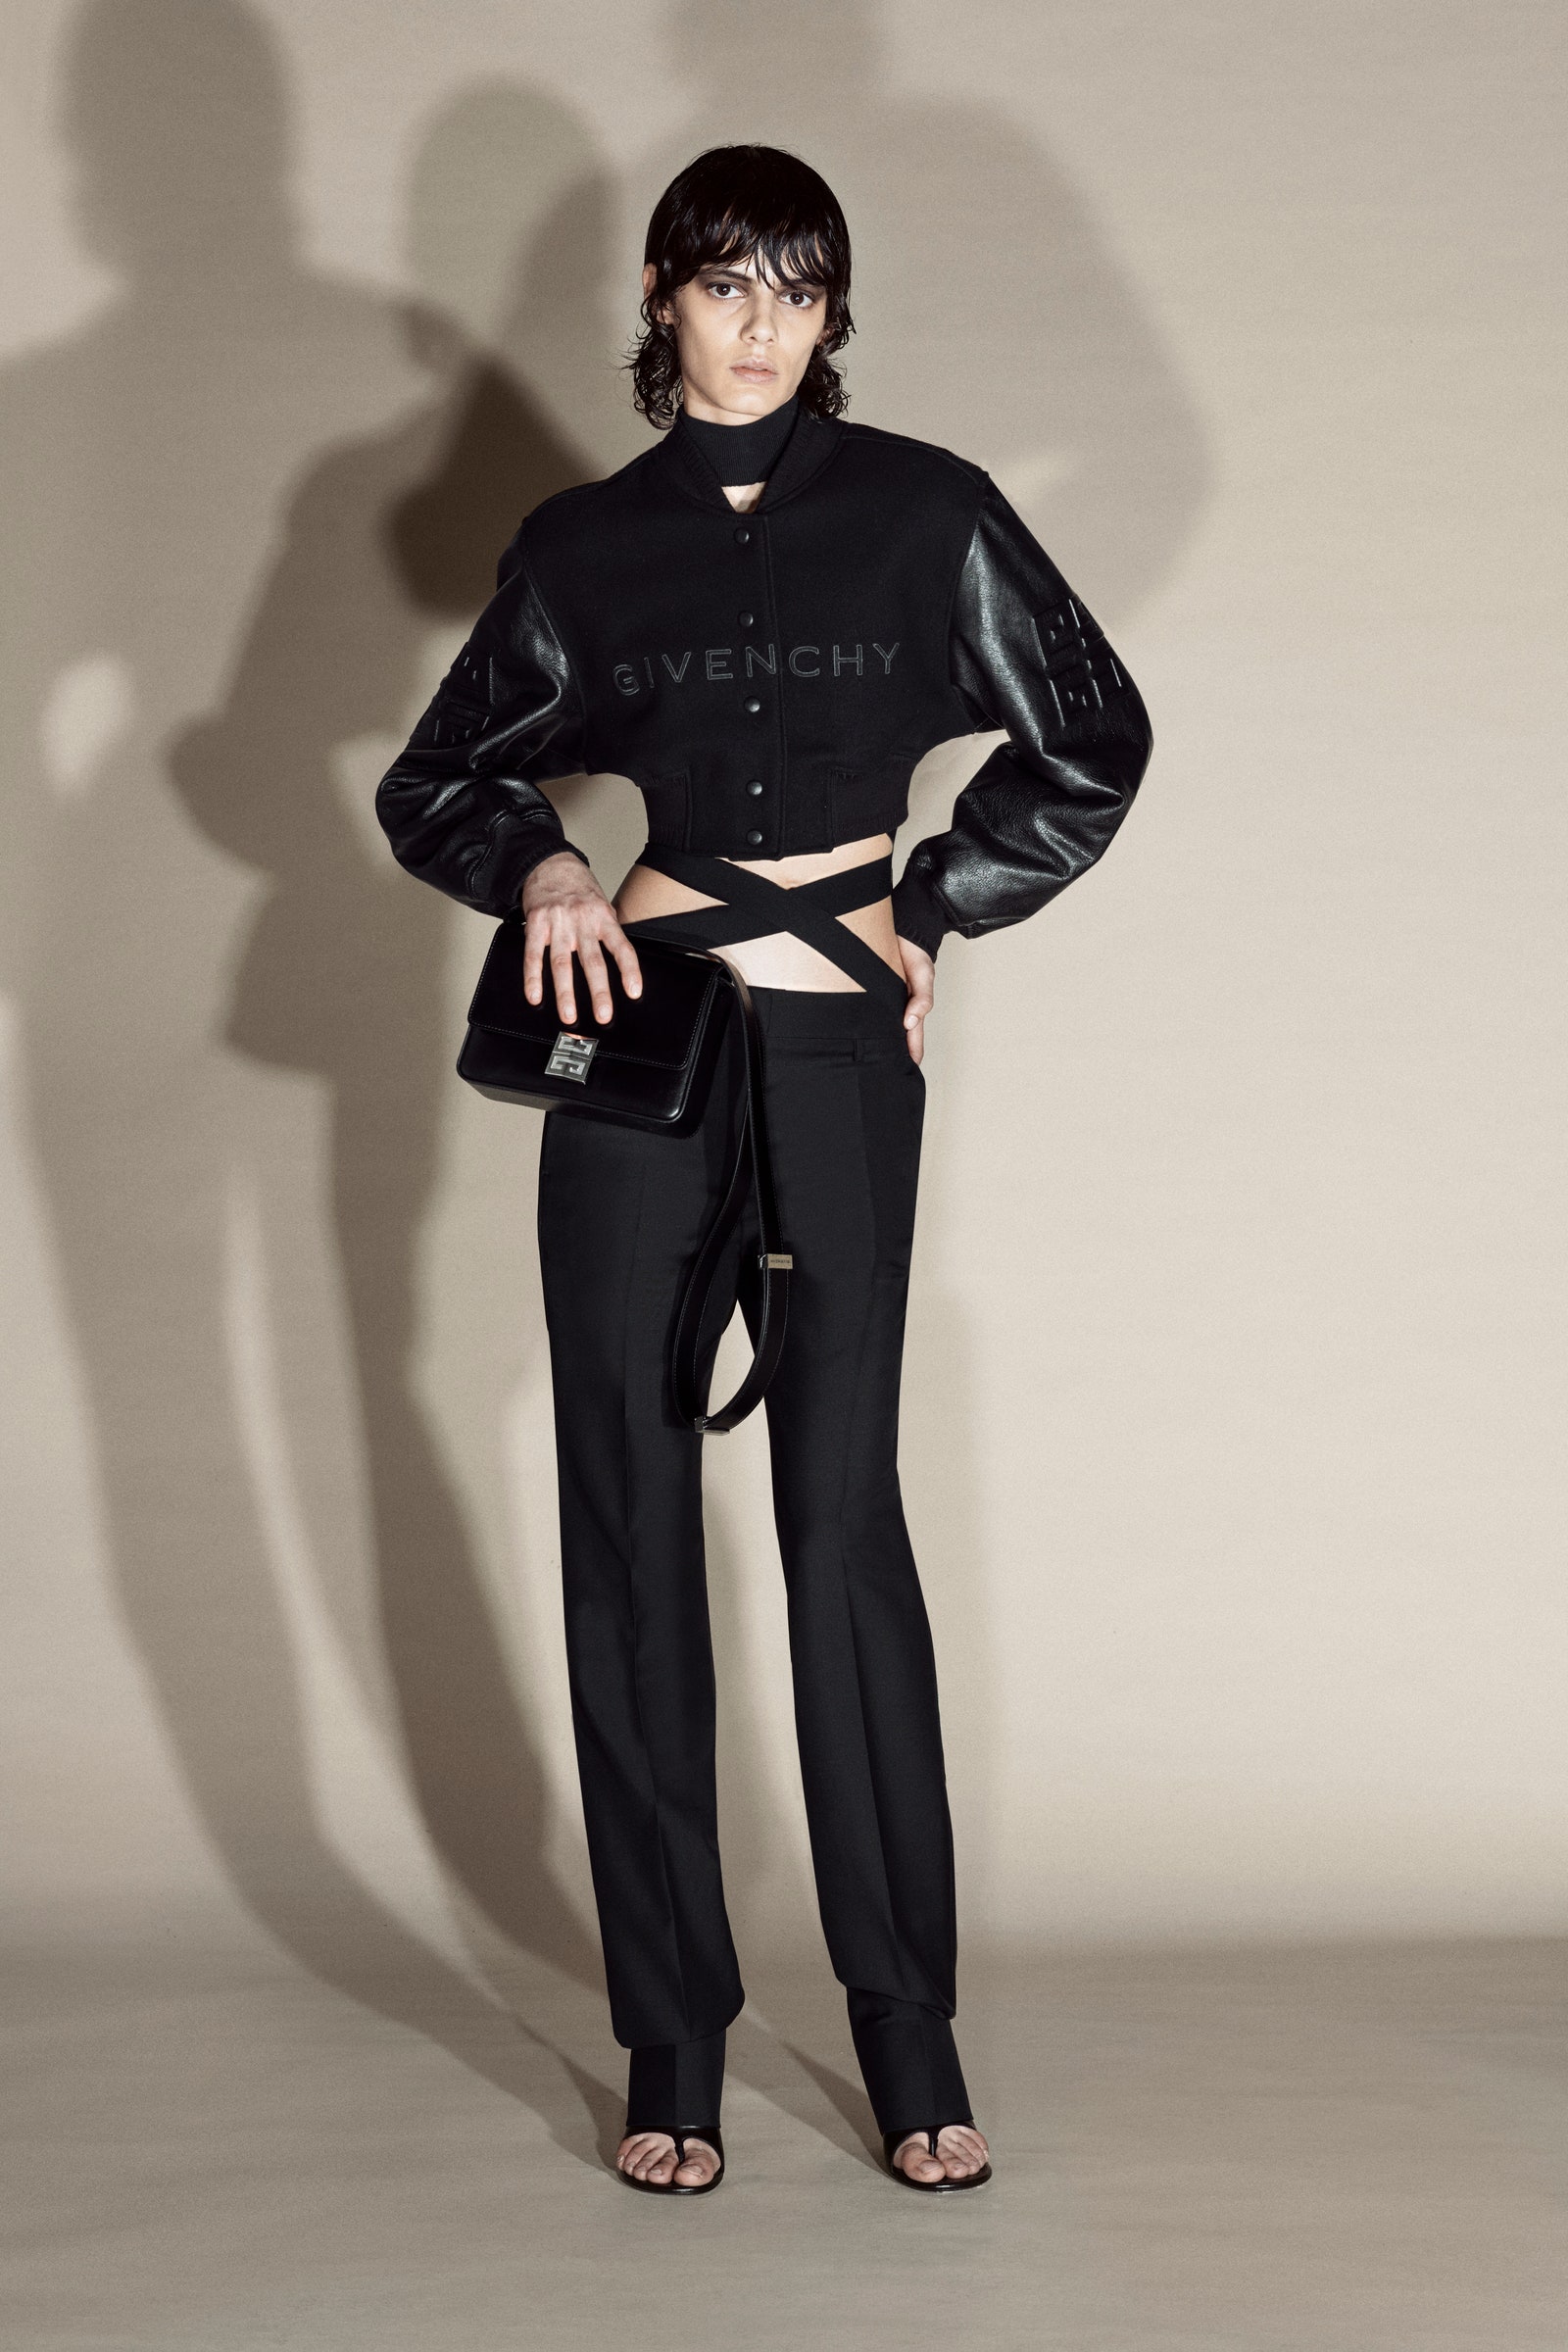 Givenchy 4G Мэтью Уильямс представил новую сумку для бренда. Что надо о ней знать